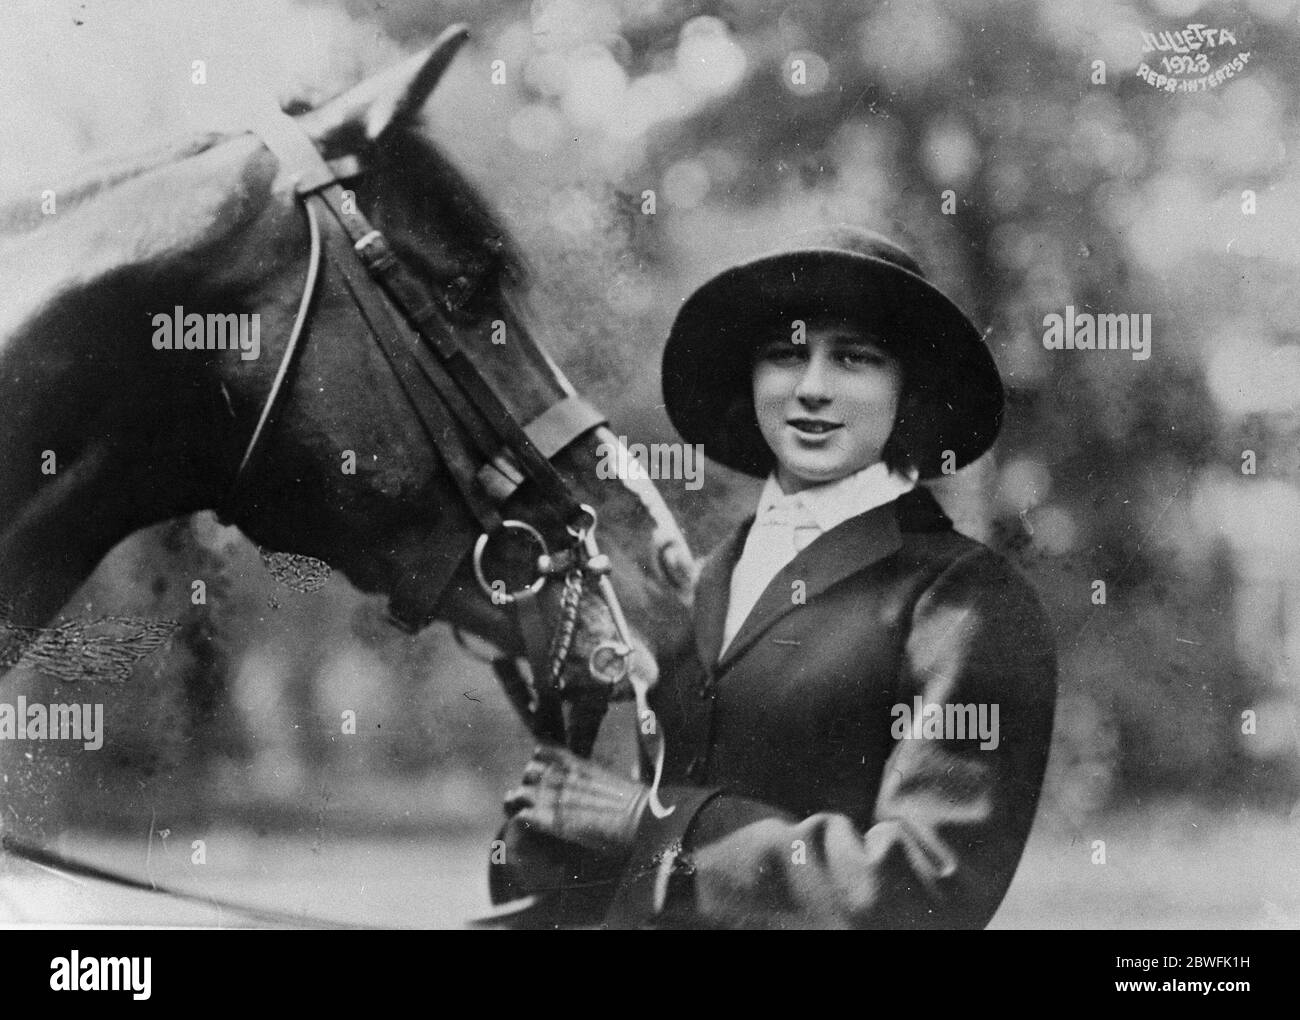 Royal Pantomine Artiste Prinzessin Iieana von Rumänien, die eine unerschrockene Pferdeiterin und kluge Reiter ist. Sie hat gerade einen Roman mit dem Titel "Mein Leben" veröffentlicht, der so geschrieben ist, als wäre es eine Autobiographie des Pferdes, das auf dem Bild vom 13. Juni 1923 zu sehen ist Stockfoto